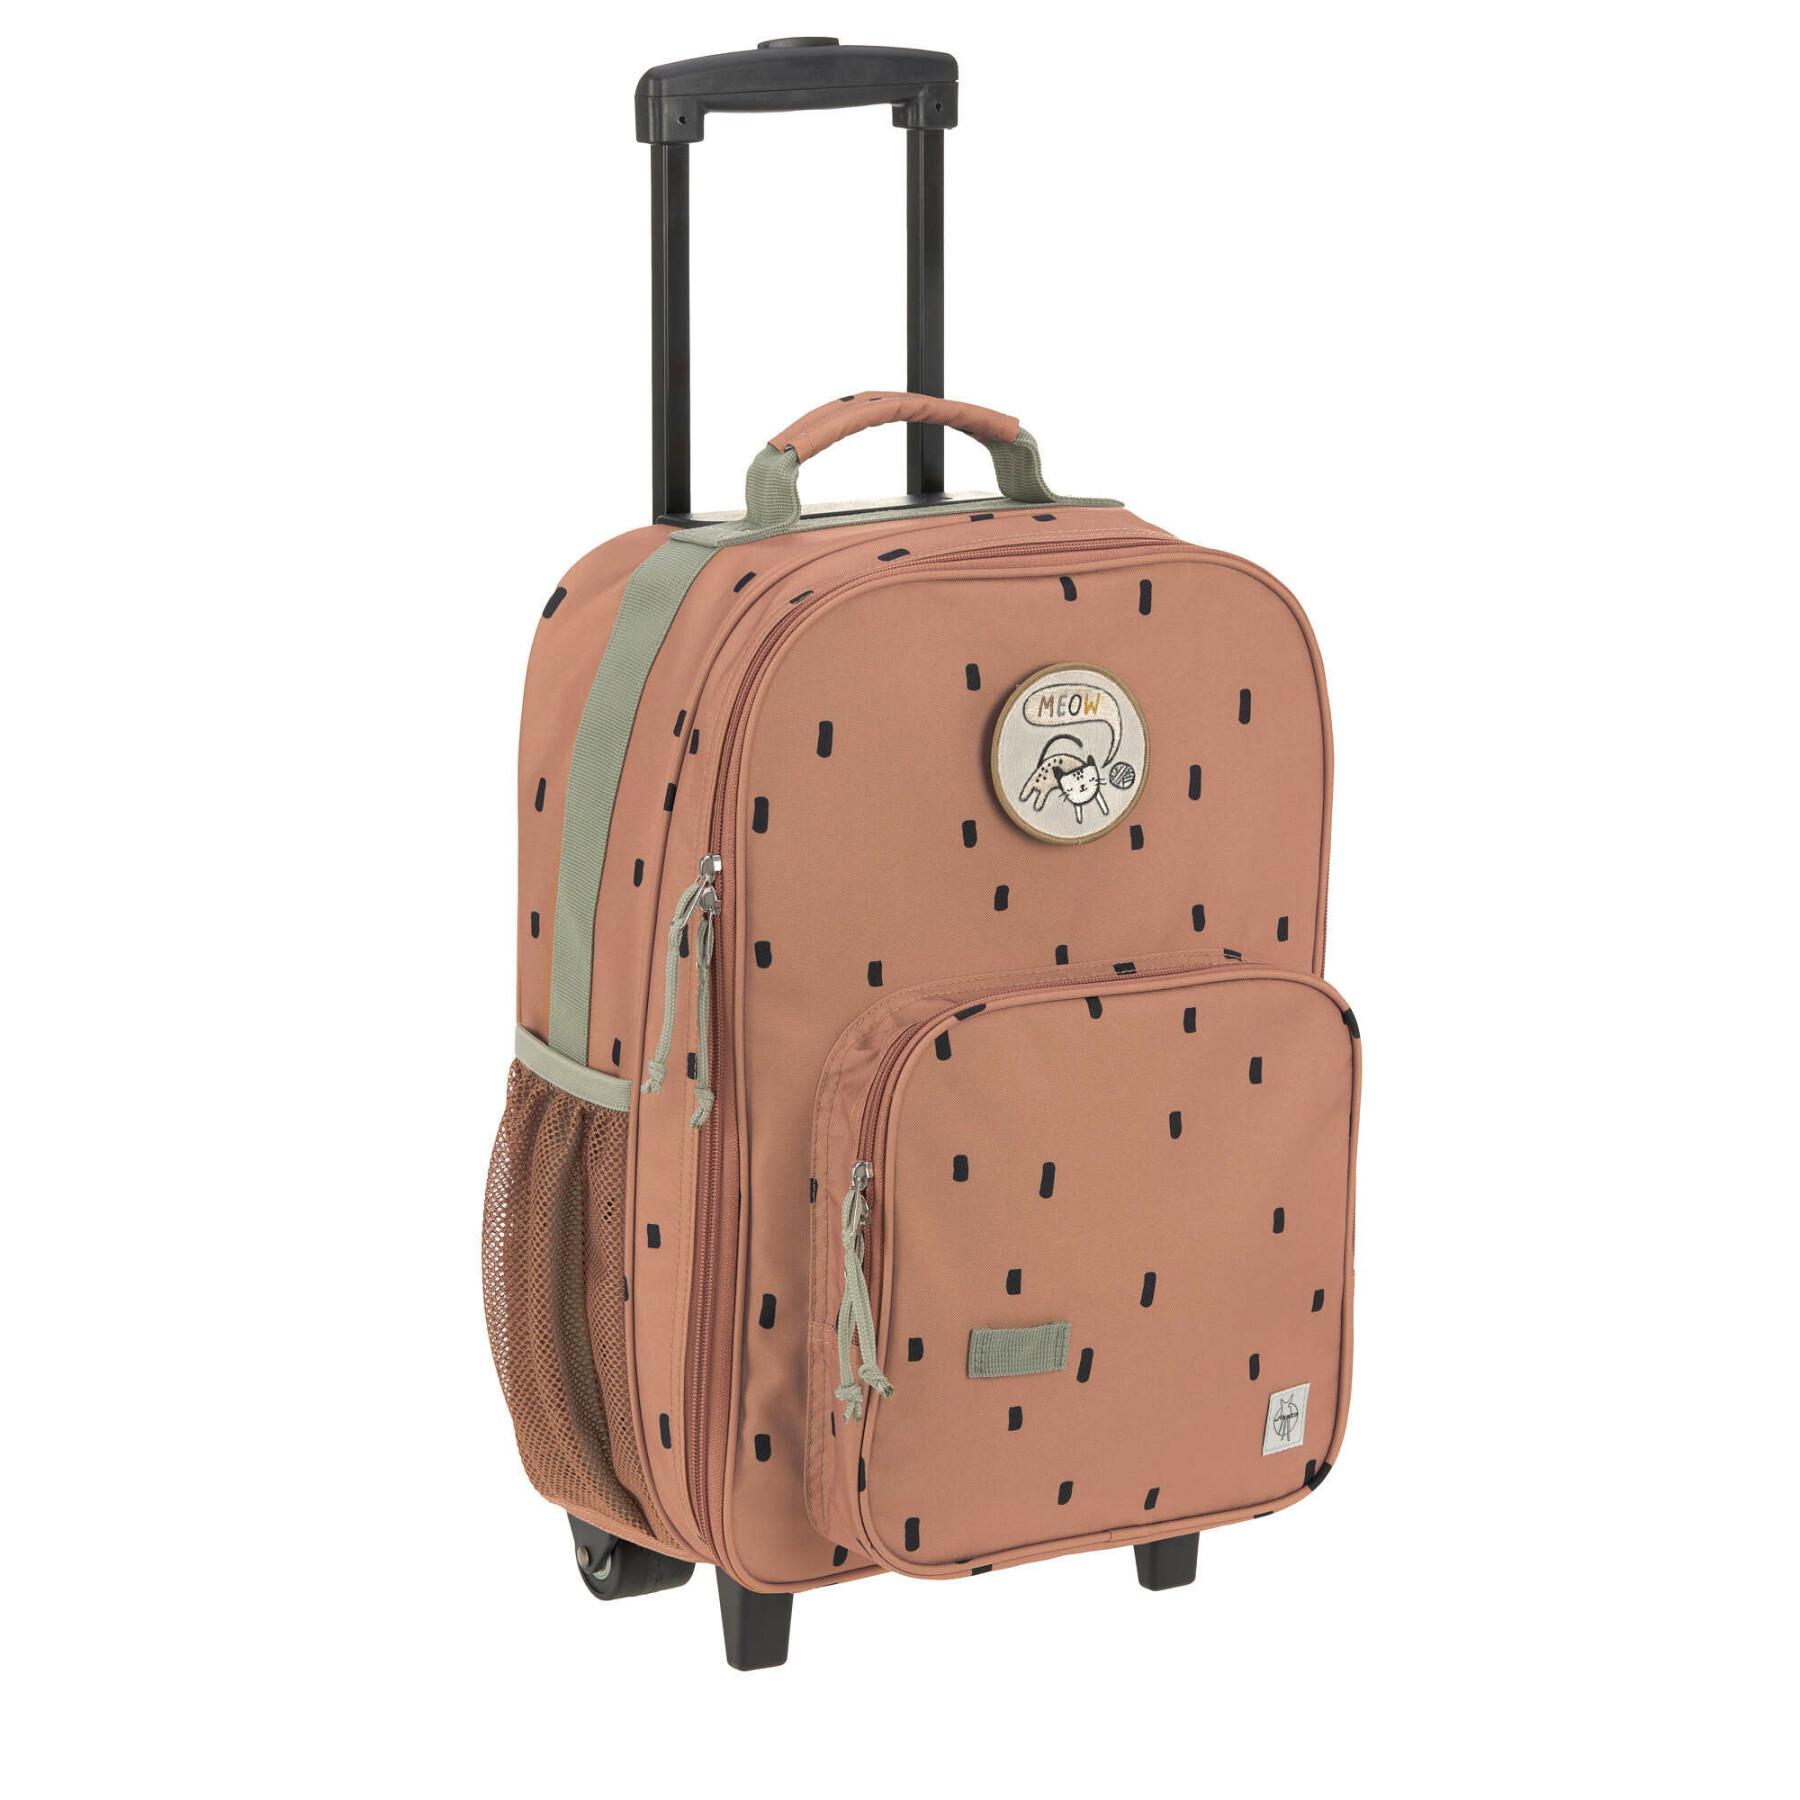 Childrens suitcase with wheels Lässig Happy Prints